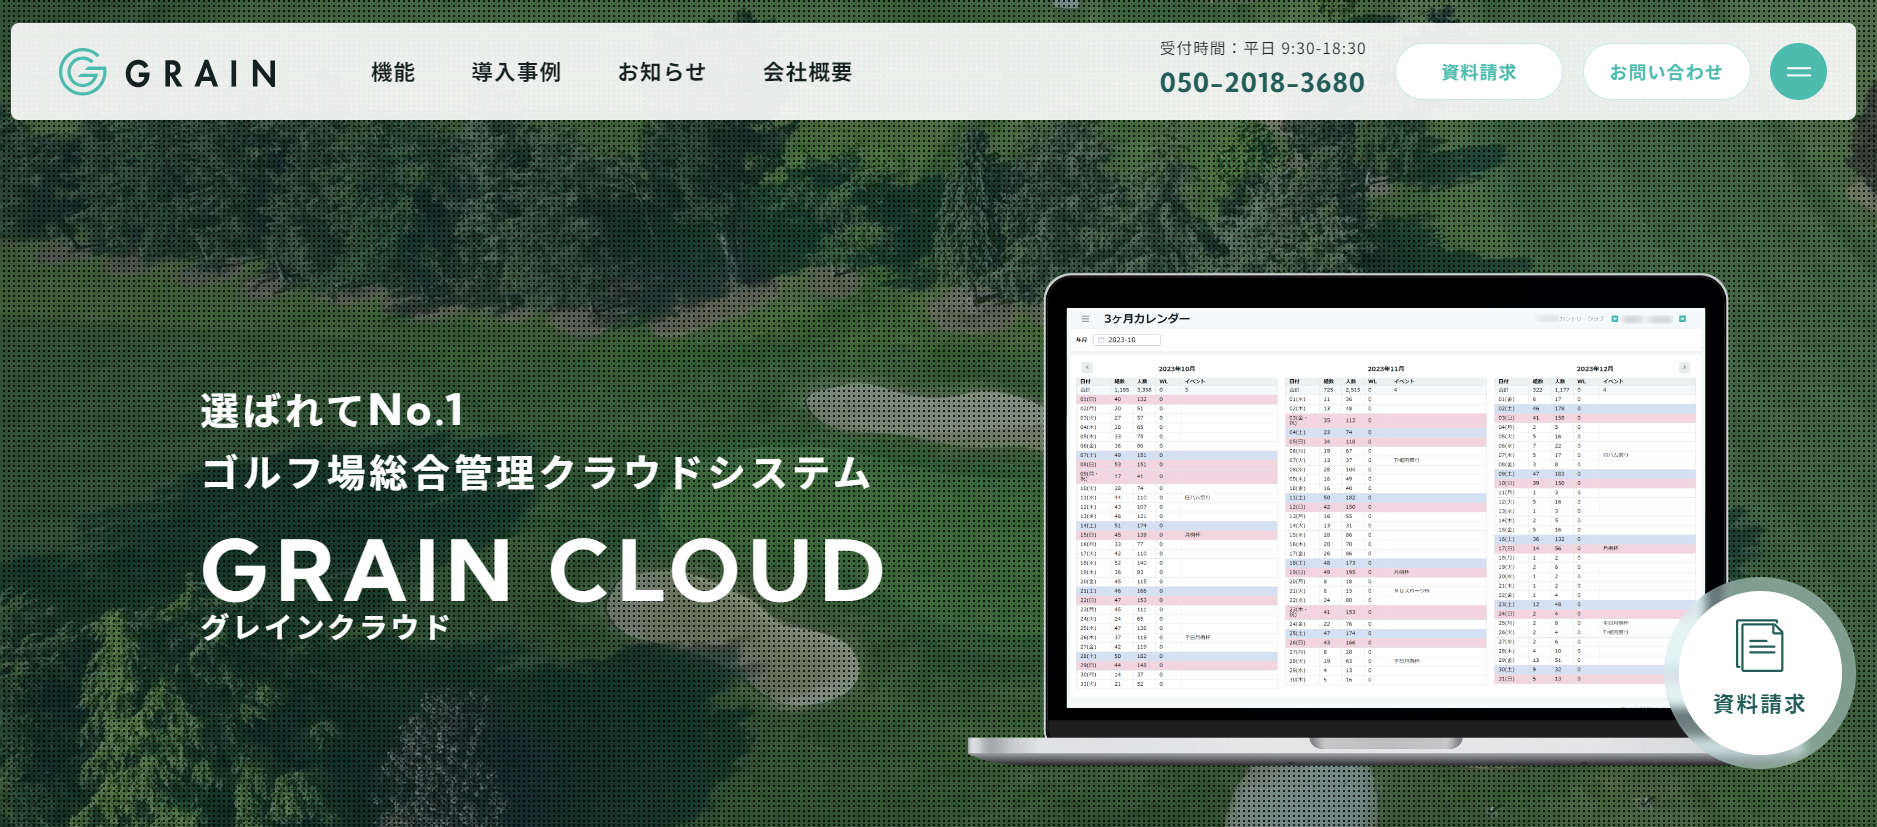 ゴルフ場システムの株式会社グレイン公式サイト画像